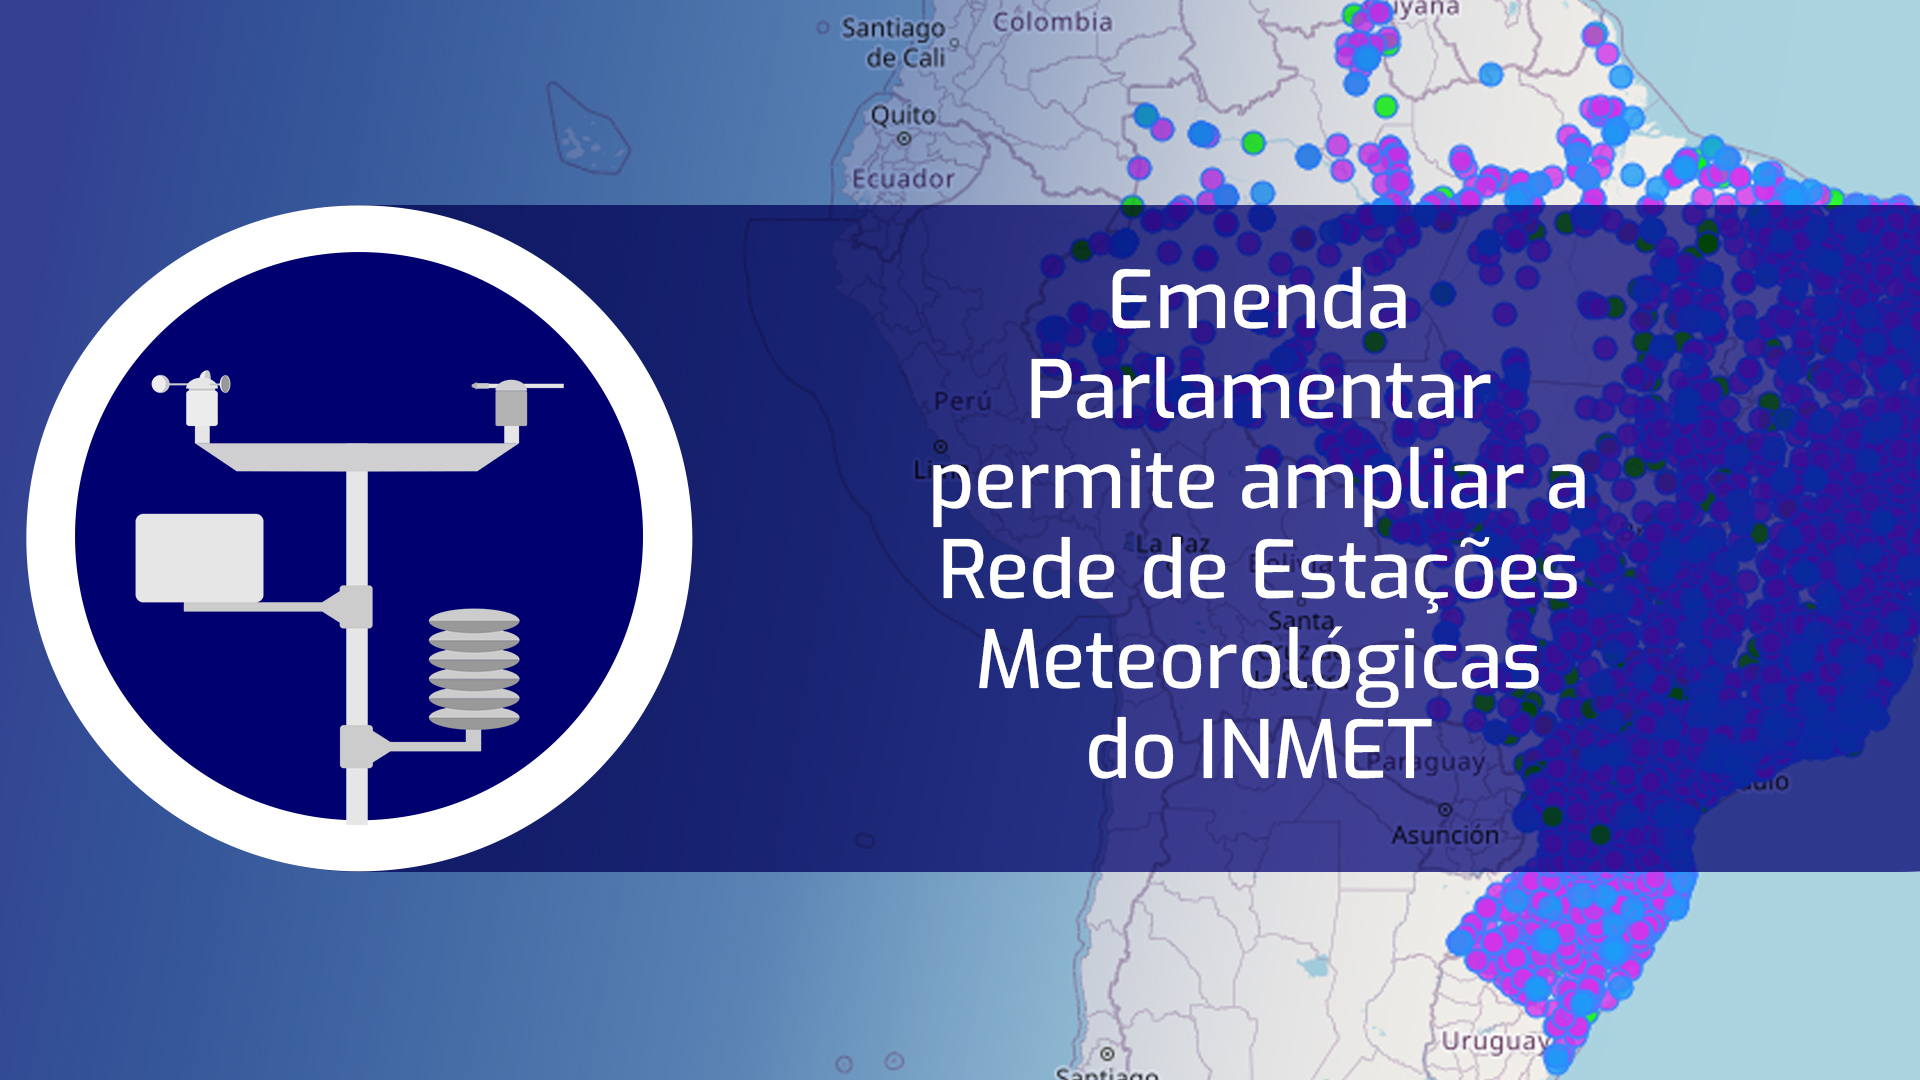 Emenda Parlamentar permite ampliar a Rede de Estações Meteorológicas do INMET